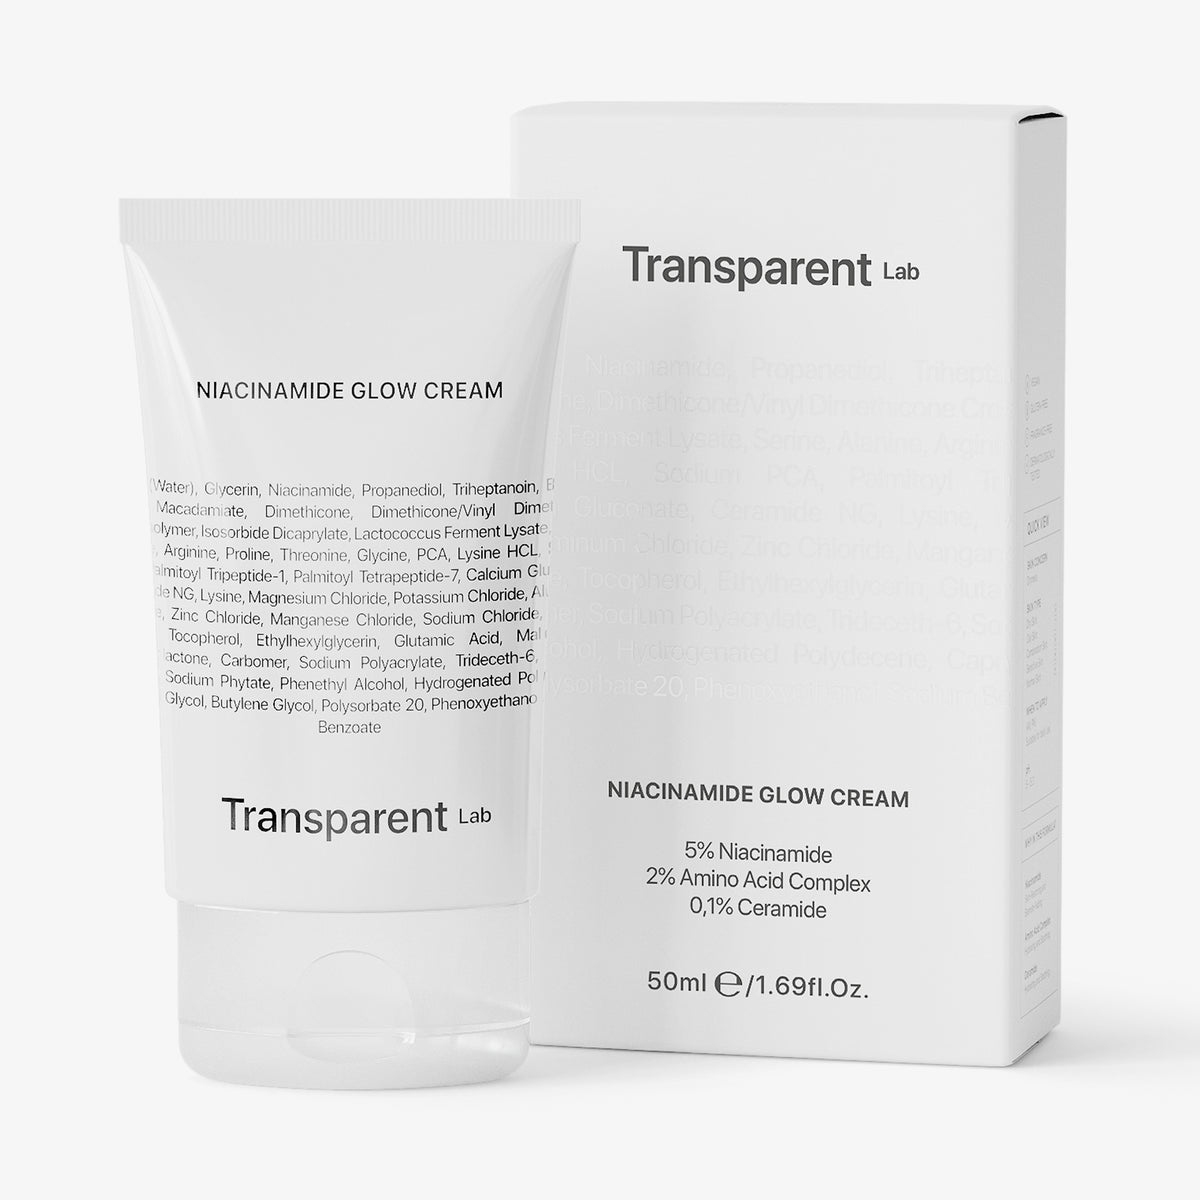 Eine Tube Transparent Lab Niacinamide Glow Cream, plus Verpackung vor weißem Hintergrund